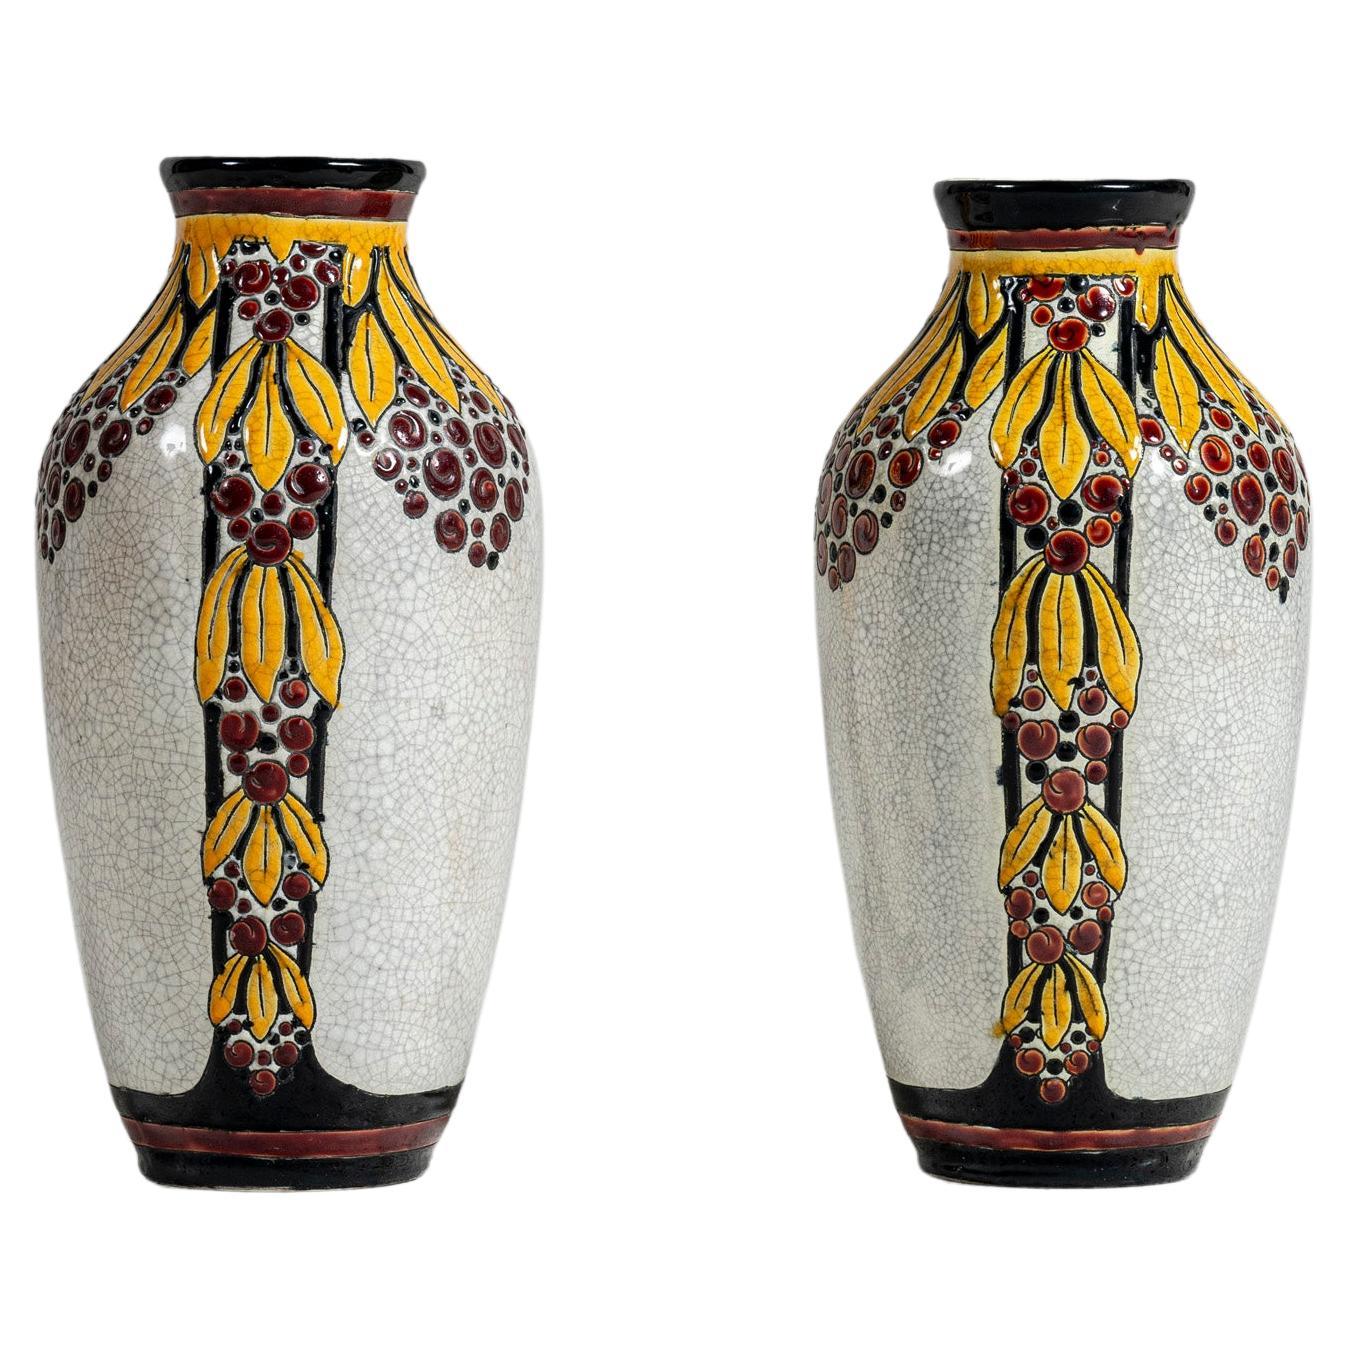 Pair of Enamel Ceramic Flower Vase by Charles Catteau Signed Boch La Louvière.